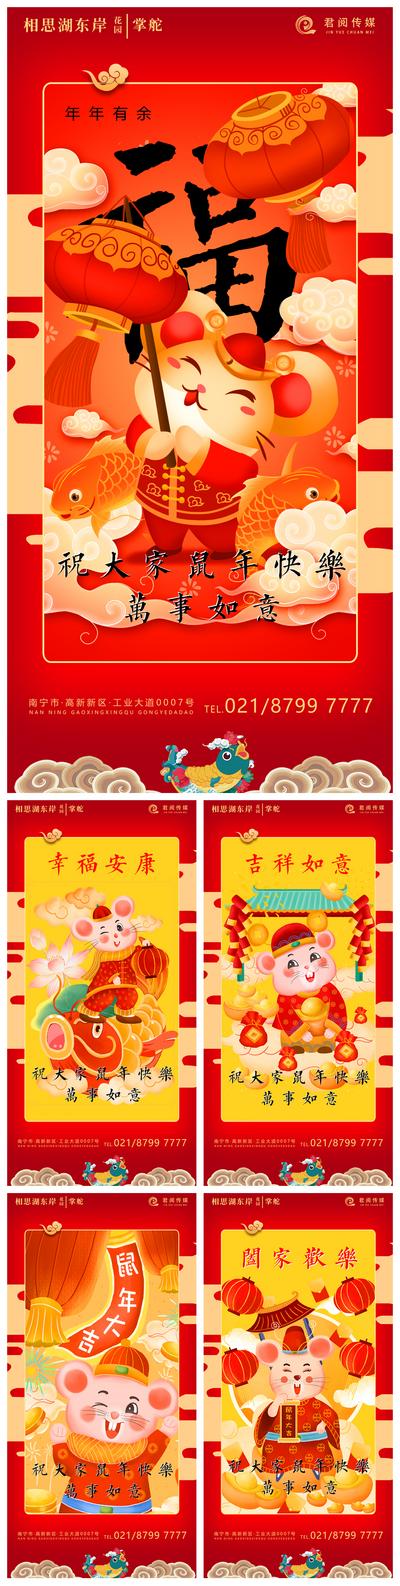 【南门网】海报 新年 鼠年 春节 贺岁 拜年 2020年 中国传统节日 民俗 中国风 卡通 灯笼